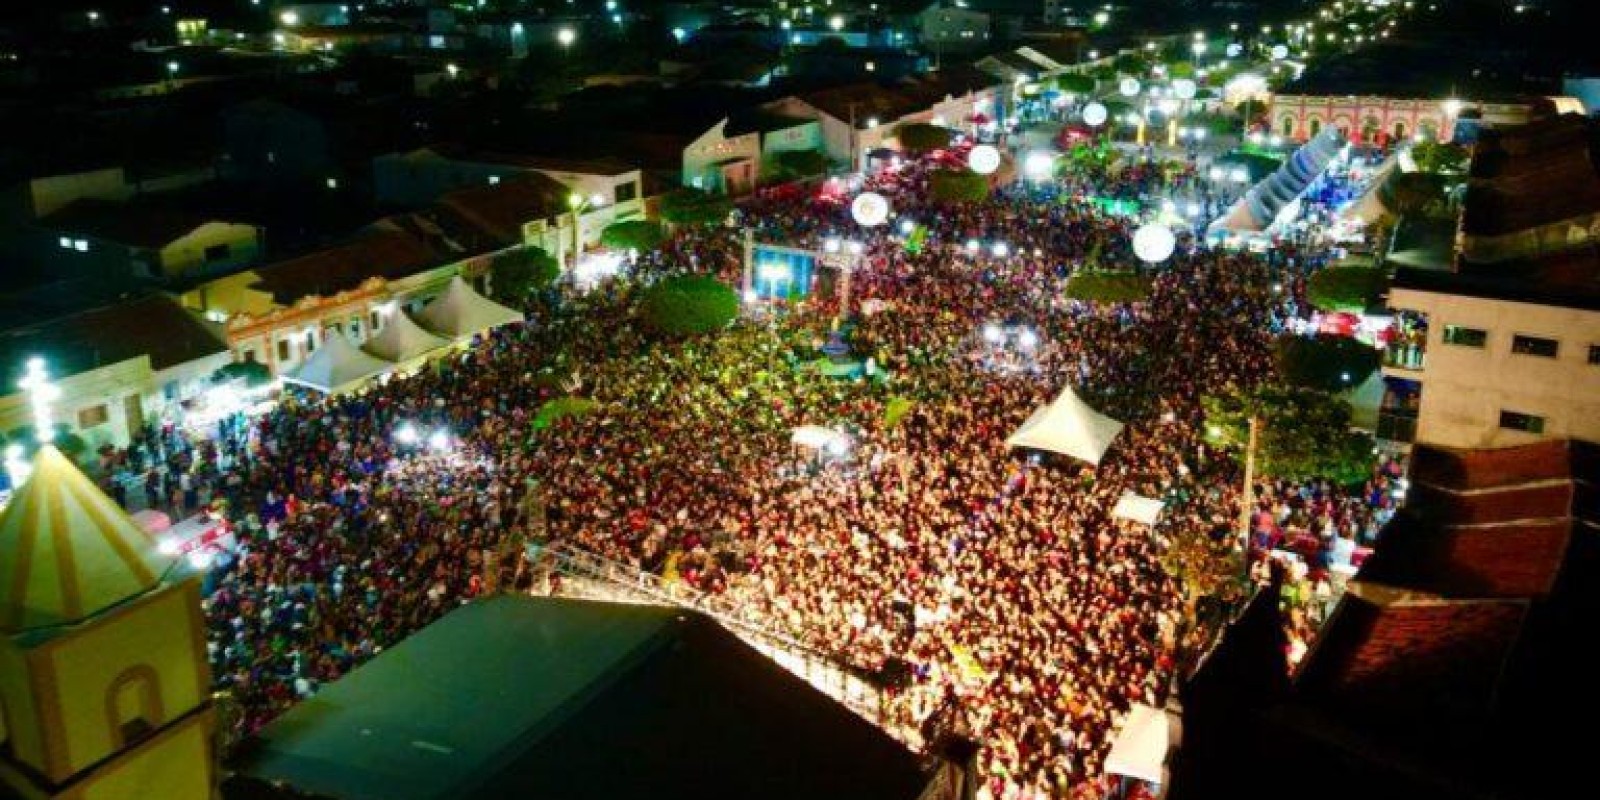 Festival do Mel é concluído com sucesso em São José dos Cordeiros; confira todas as fotos do evento